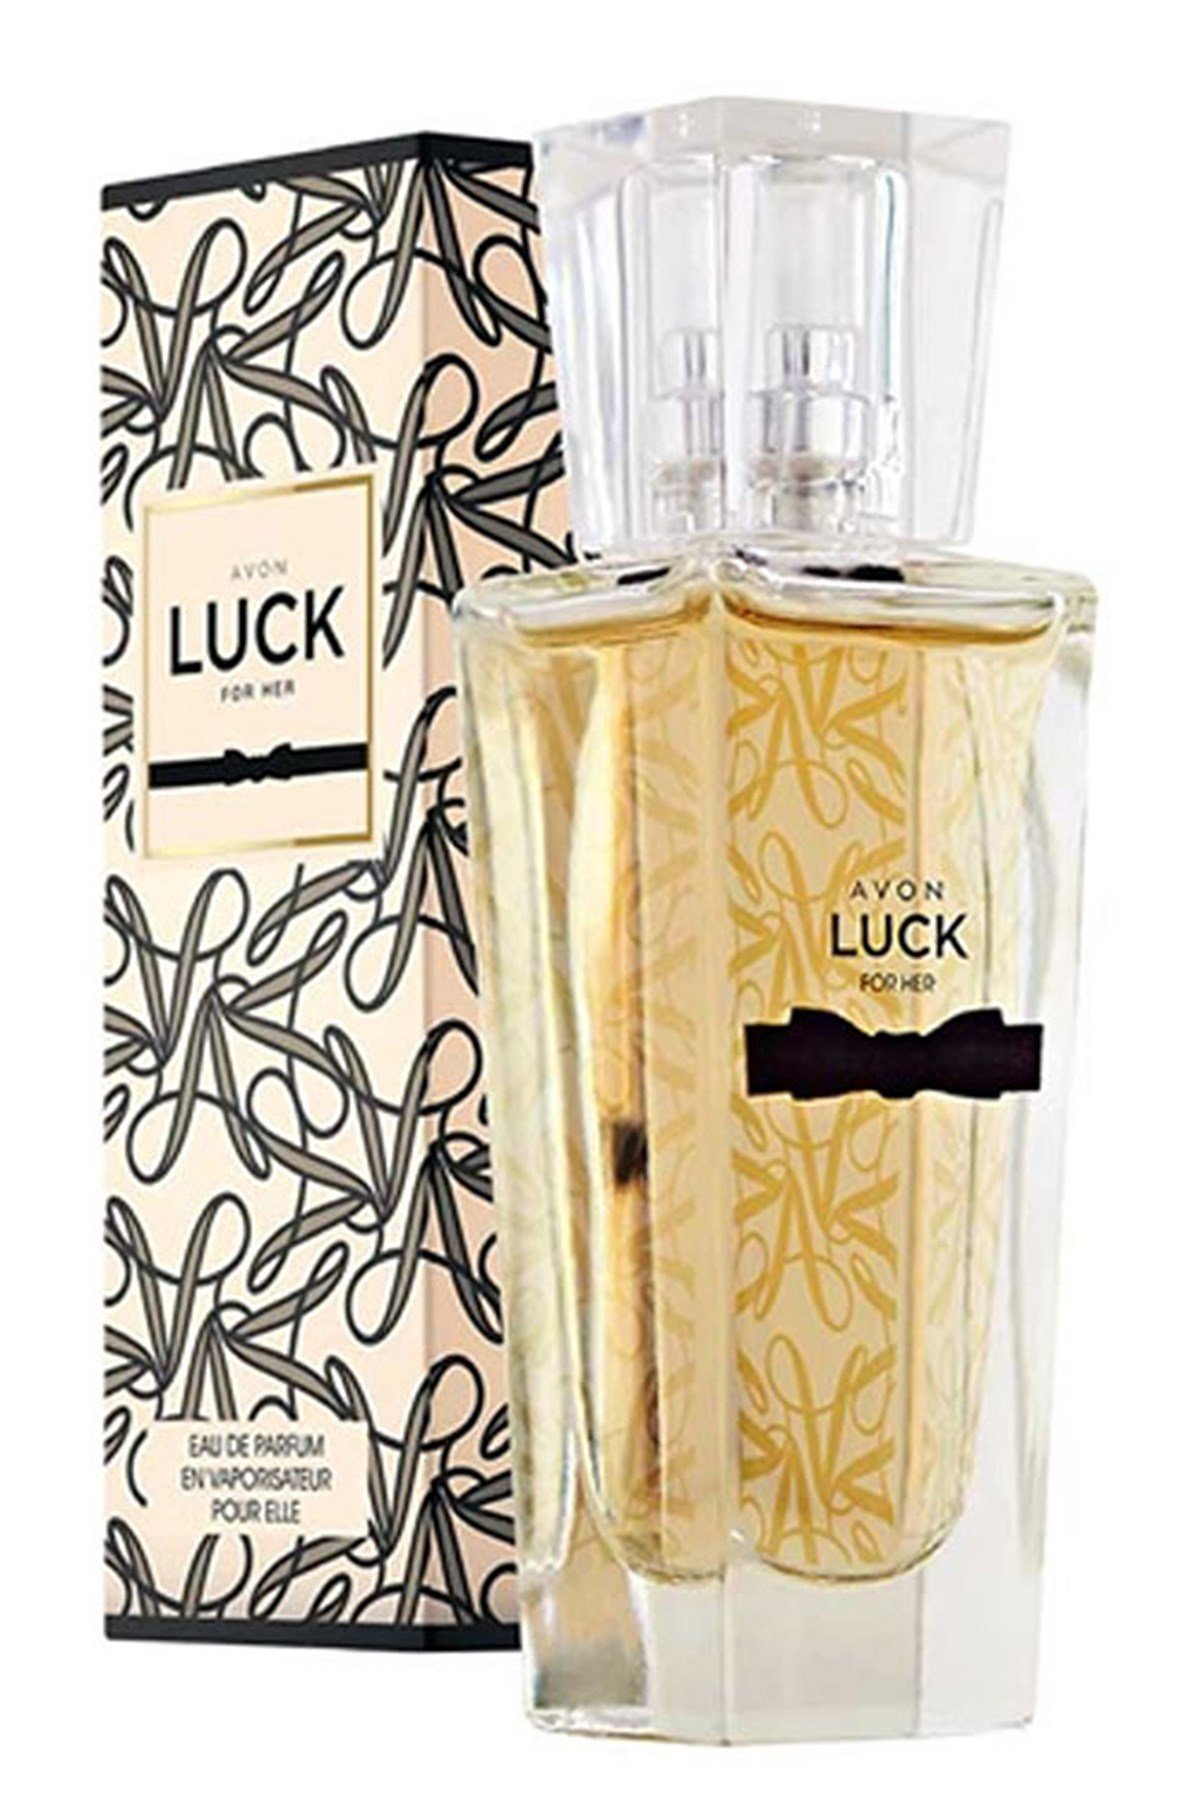 Avon Luck Kadın Parfüm Edp 30 Ml.